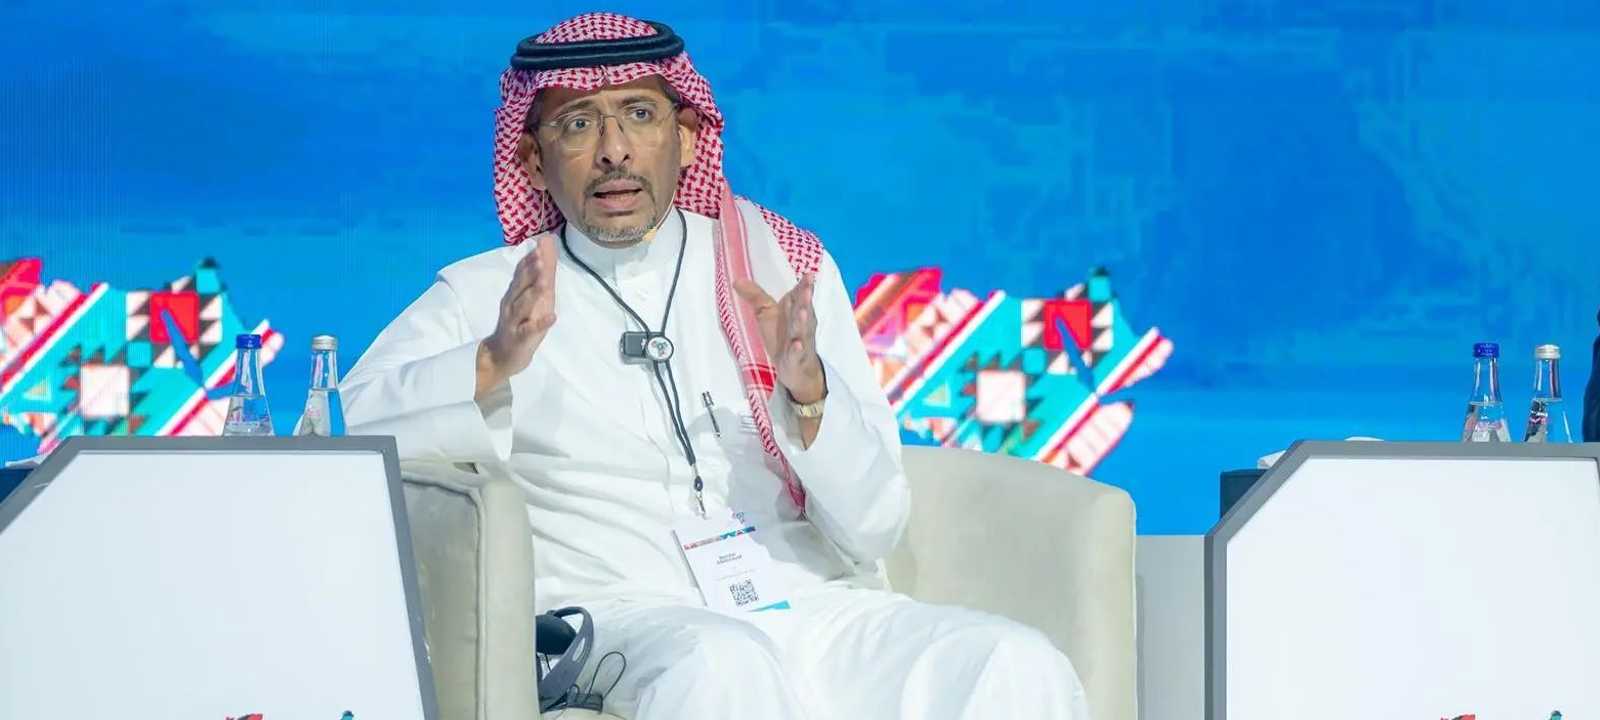 وزير الصناعة والثروة المعدنية السعودي بندر الخريف